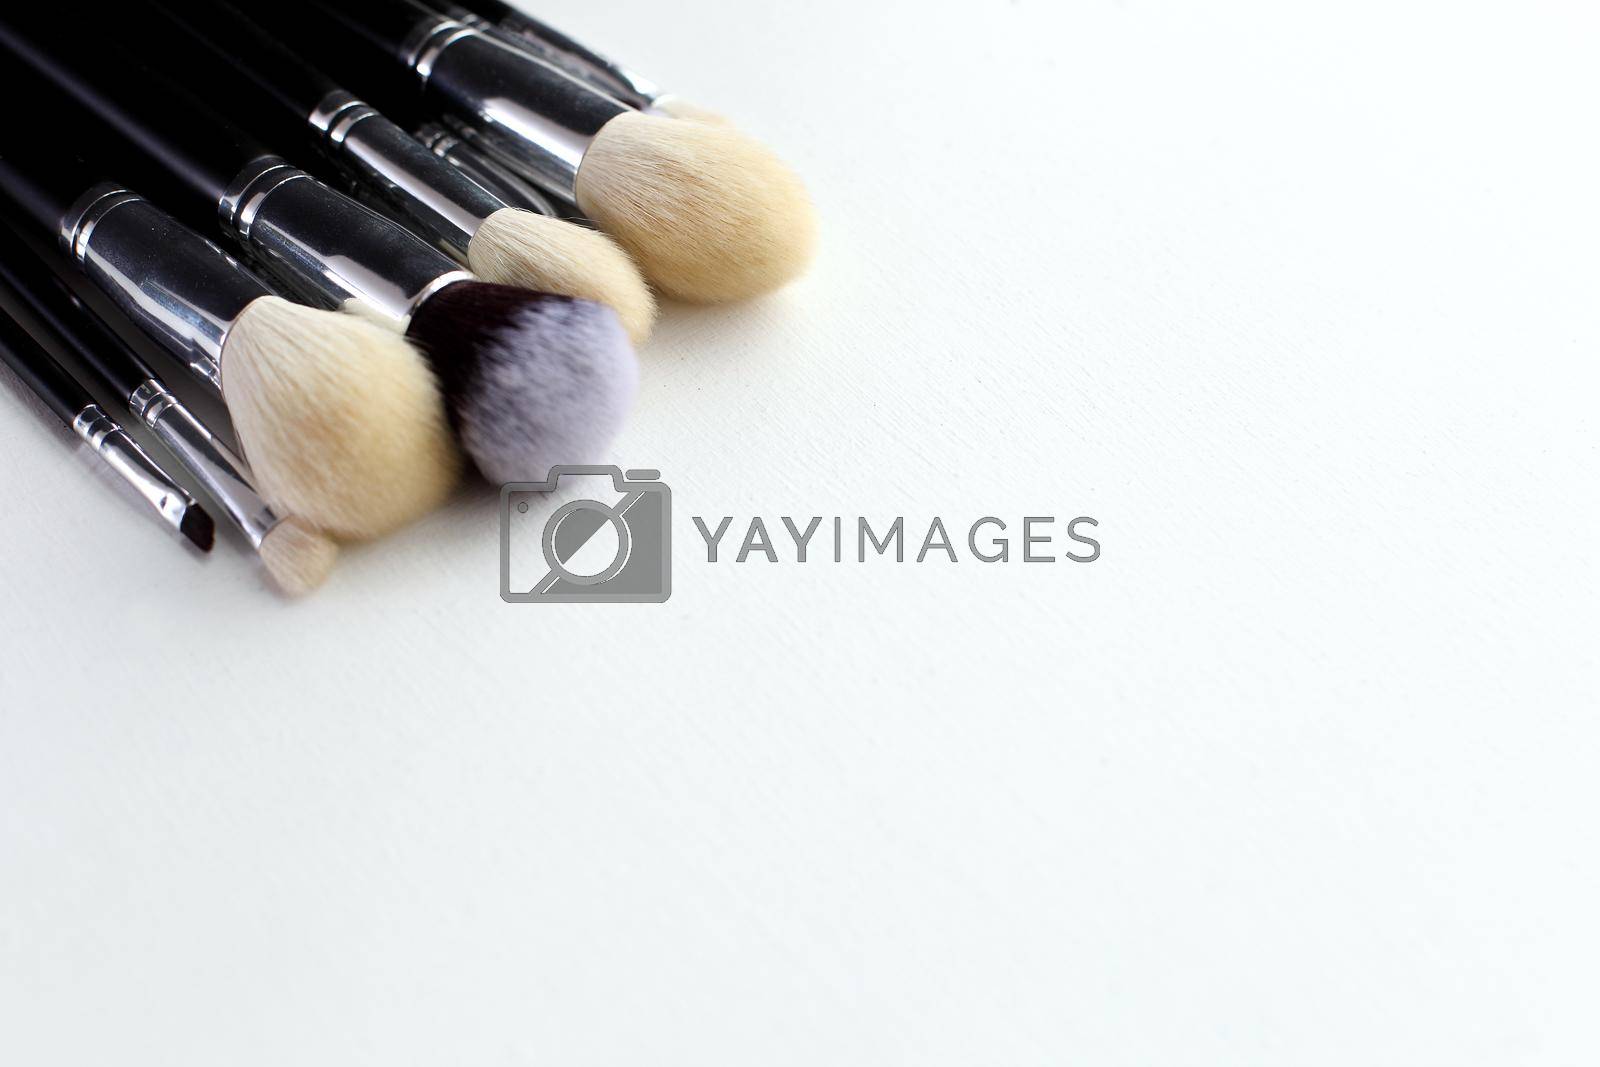 Royalty free image of Makeup brush on white background by IvanGalashchuk